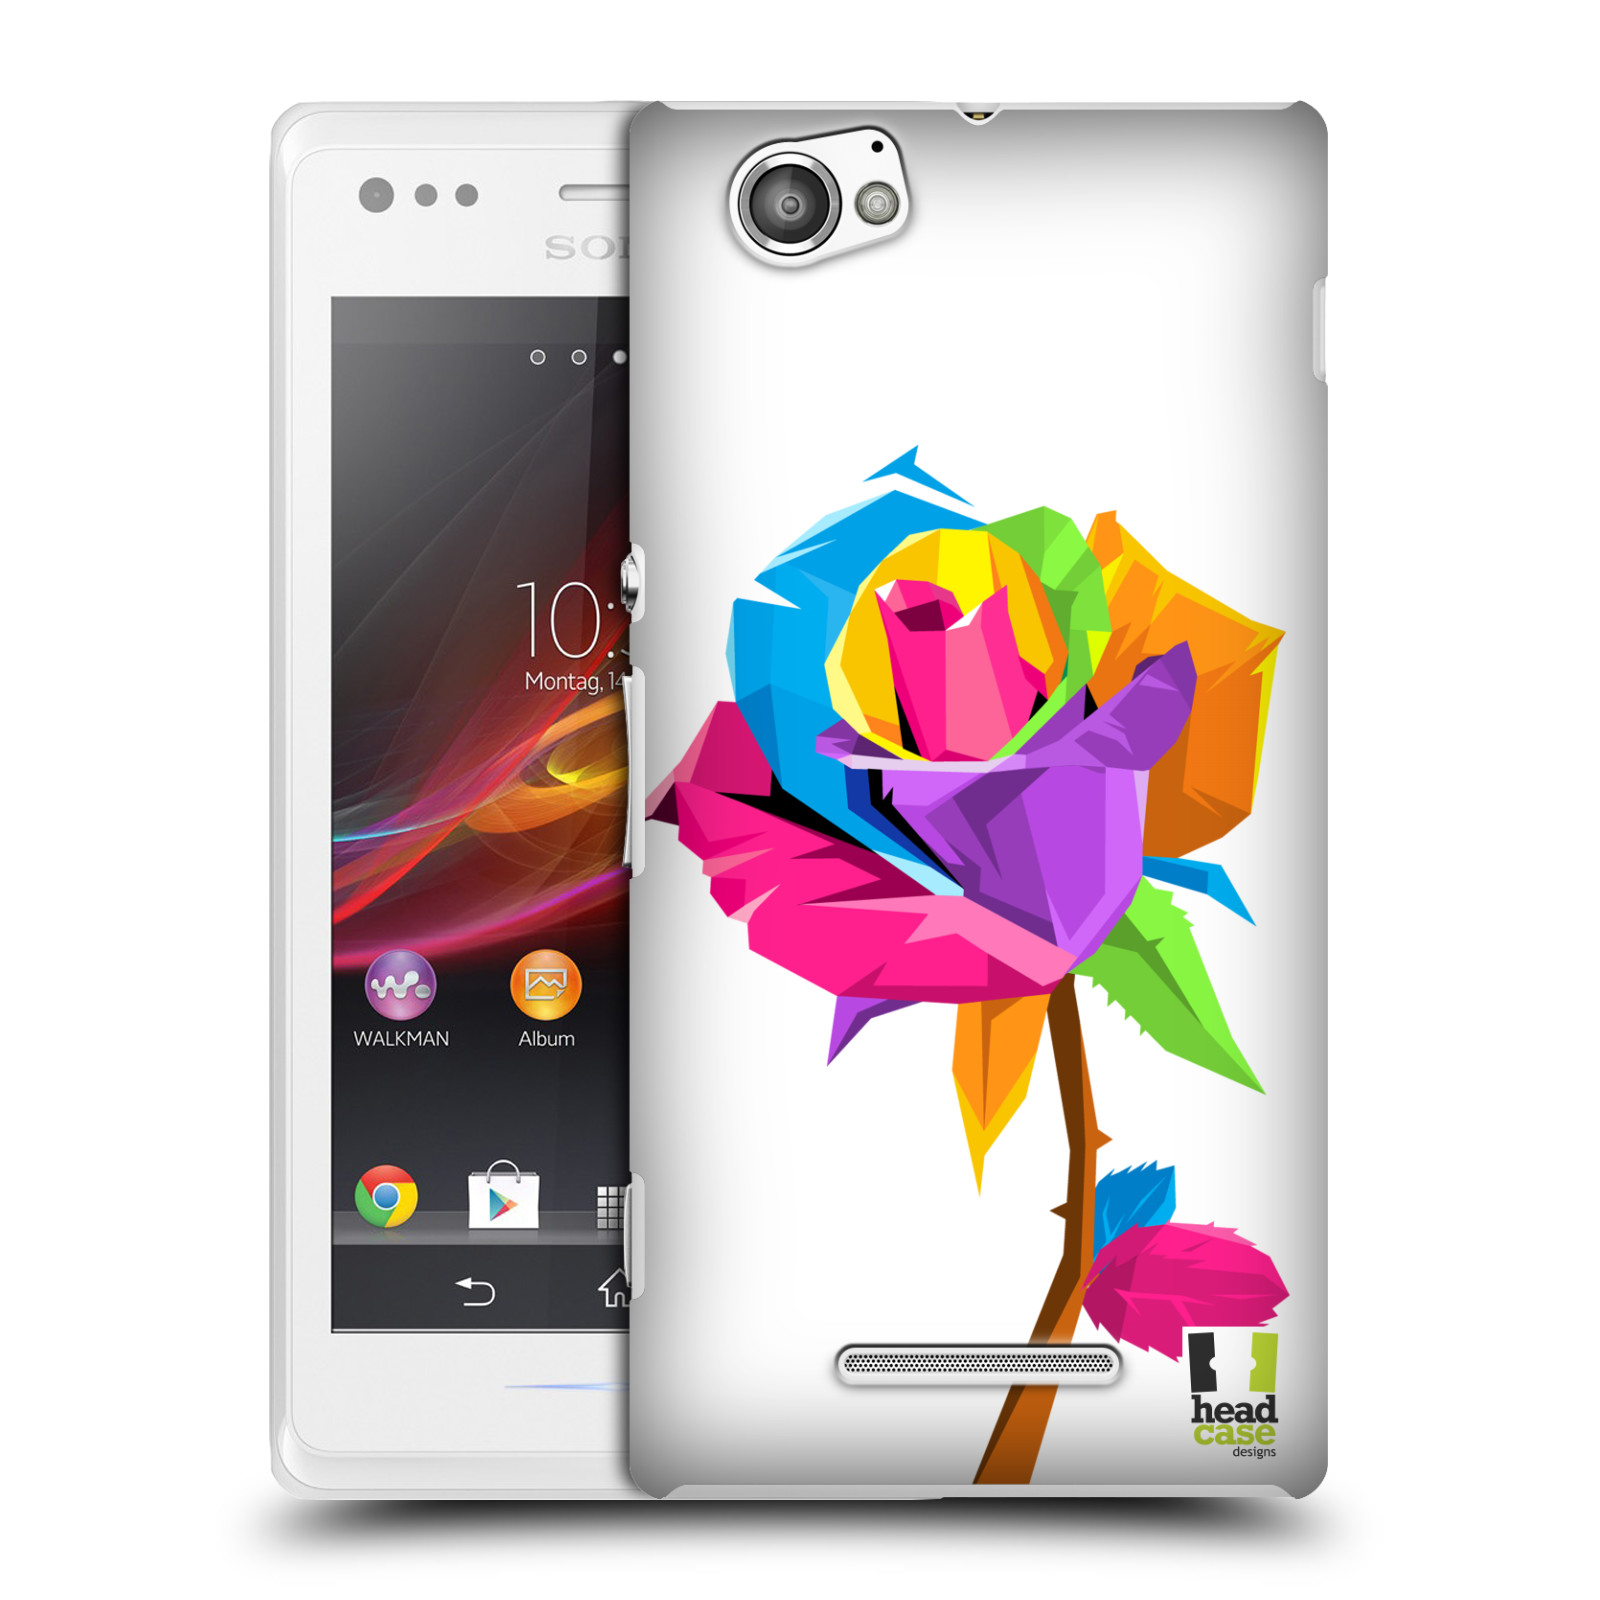 HEAD CASE plastový obal na mobil Sony Xperia M vzor POP ART kubismus růže